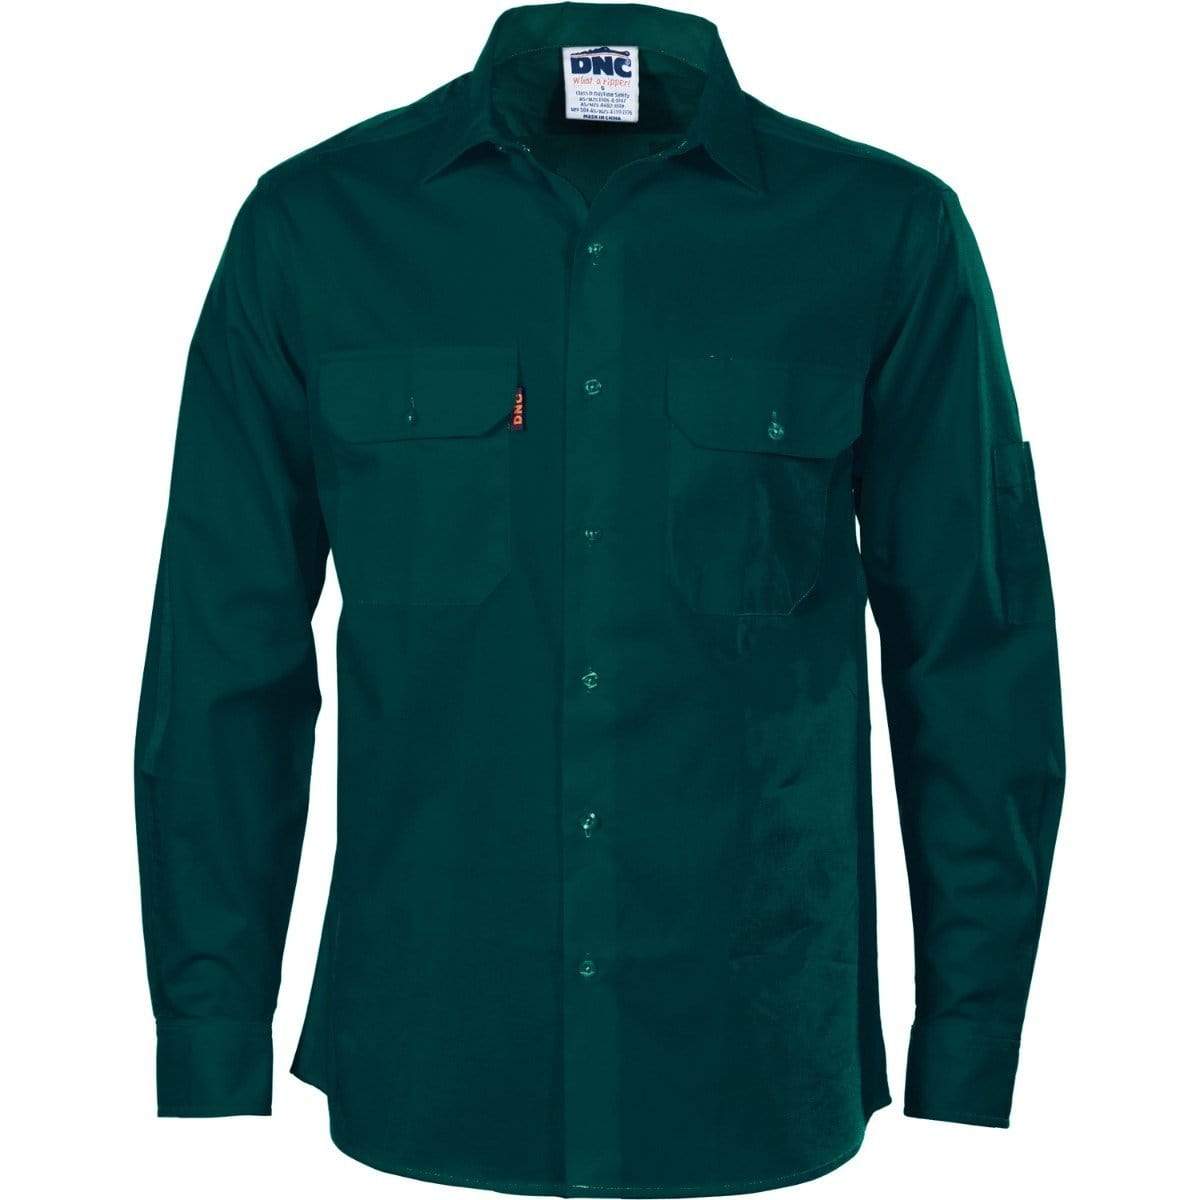 Dnc Workwear Cool-breeze Cotton Long Sleeve Work Shirt - 3208 Work Wear DNC Workwear Green S 